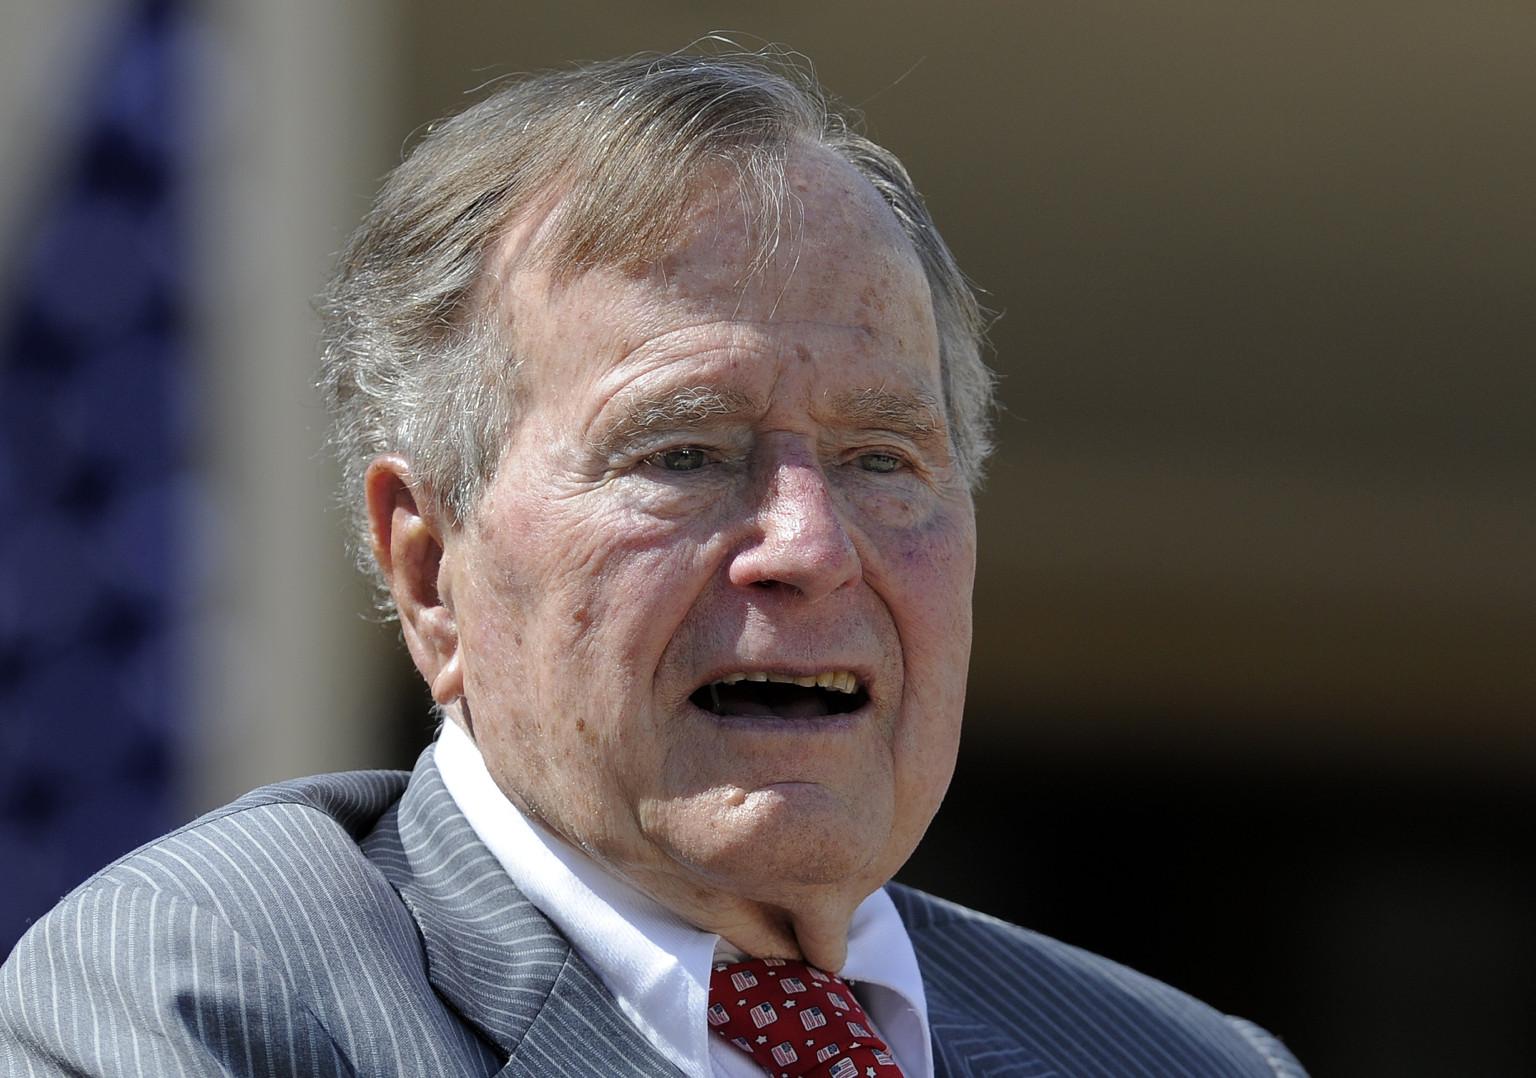 Osam žena optužilo Džordža Buša Starijeg za neprikladno dodirivanje